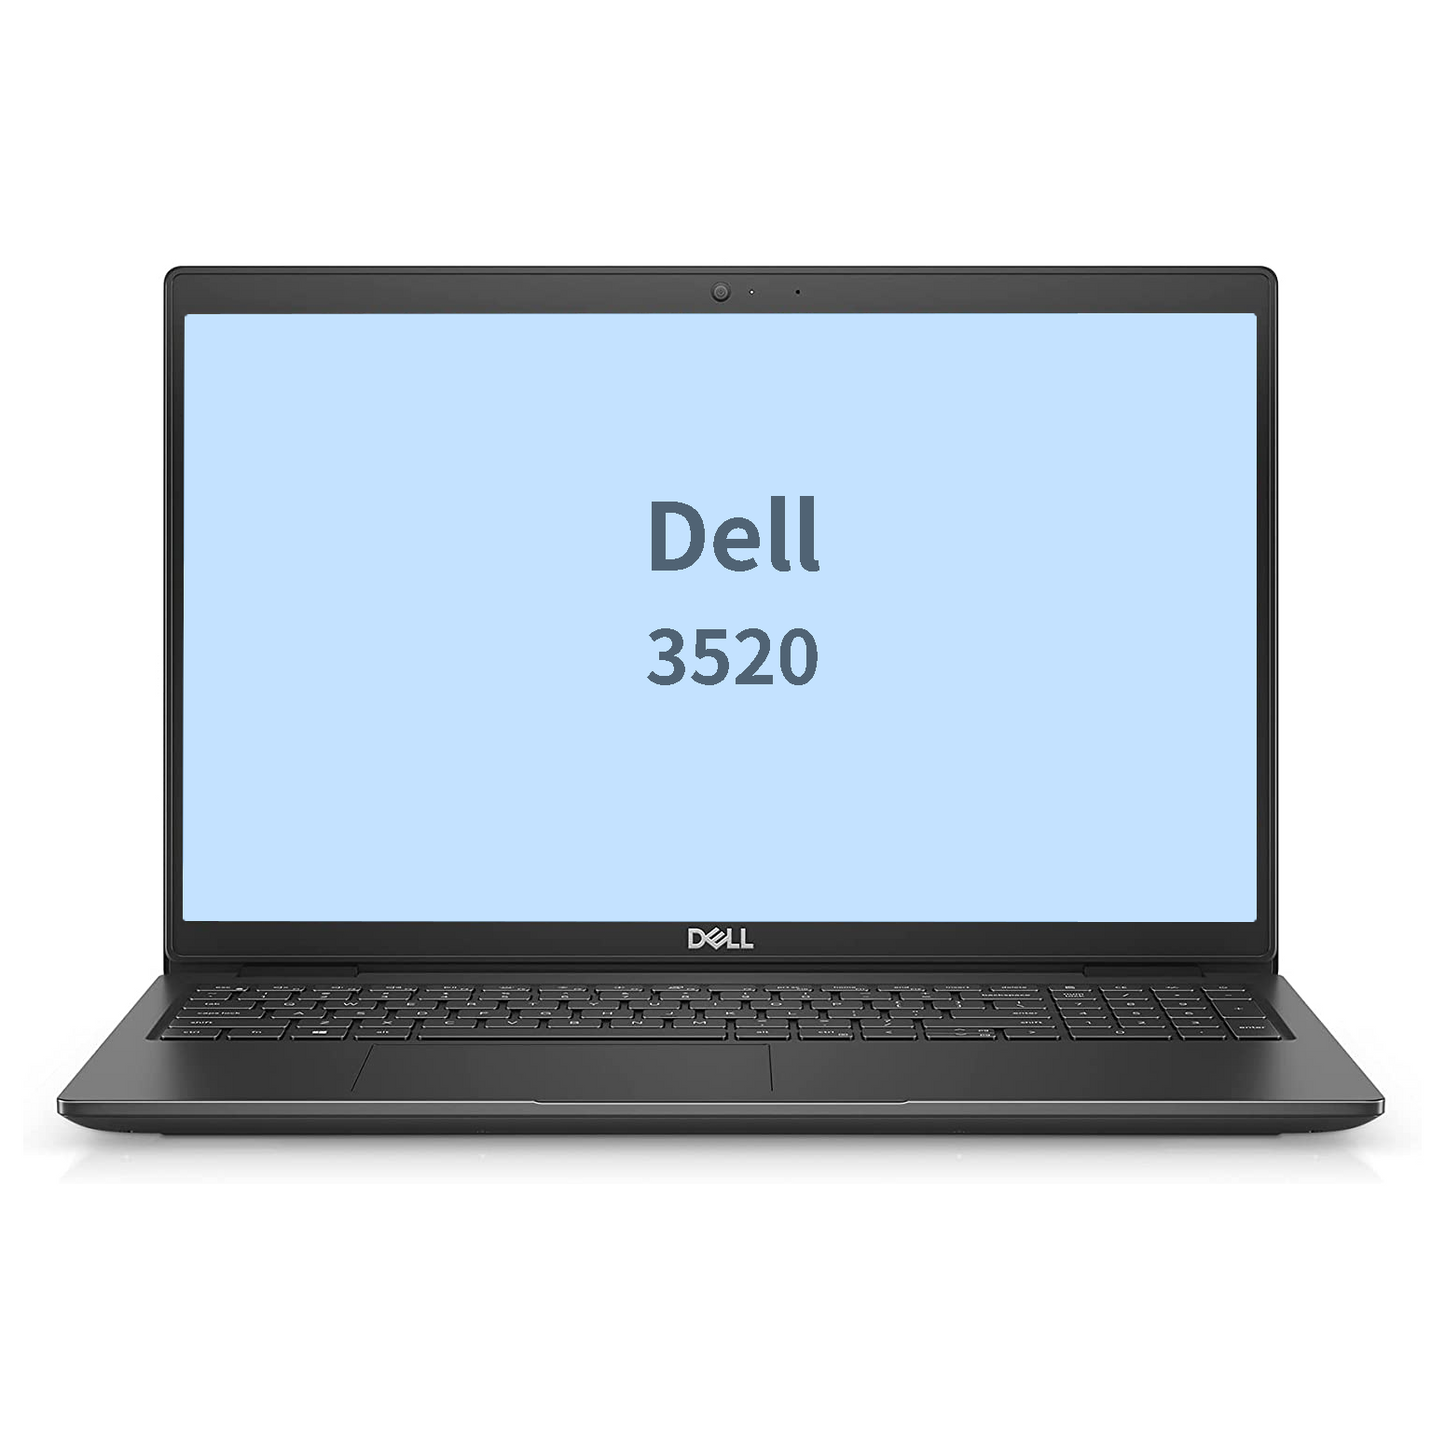 Dell 3520